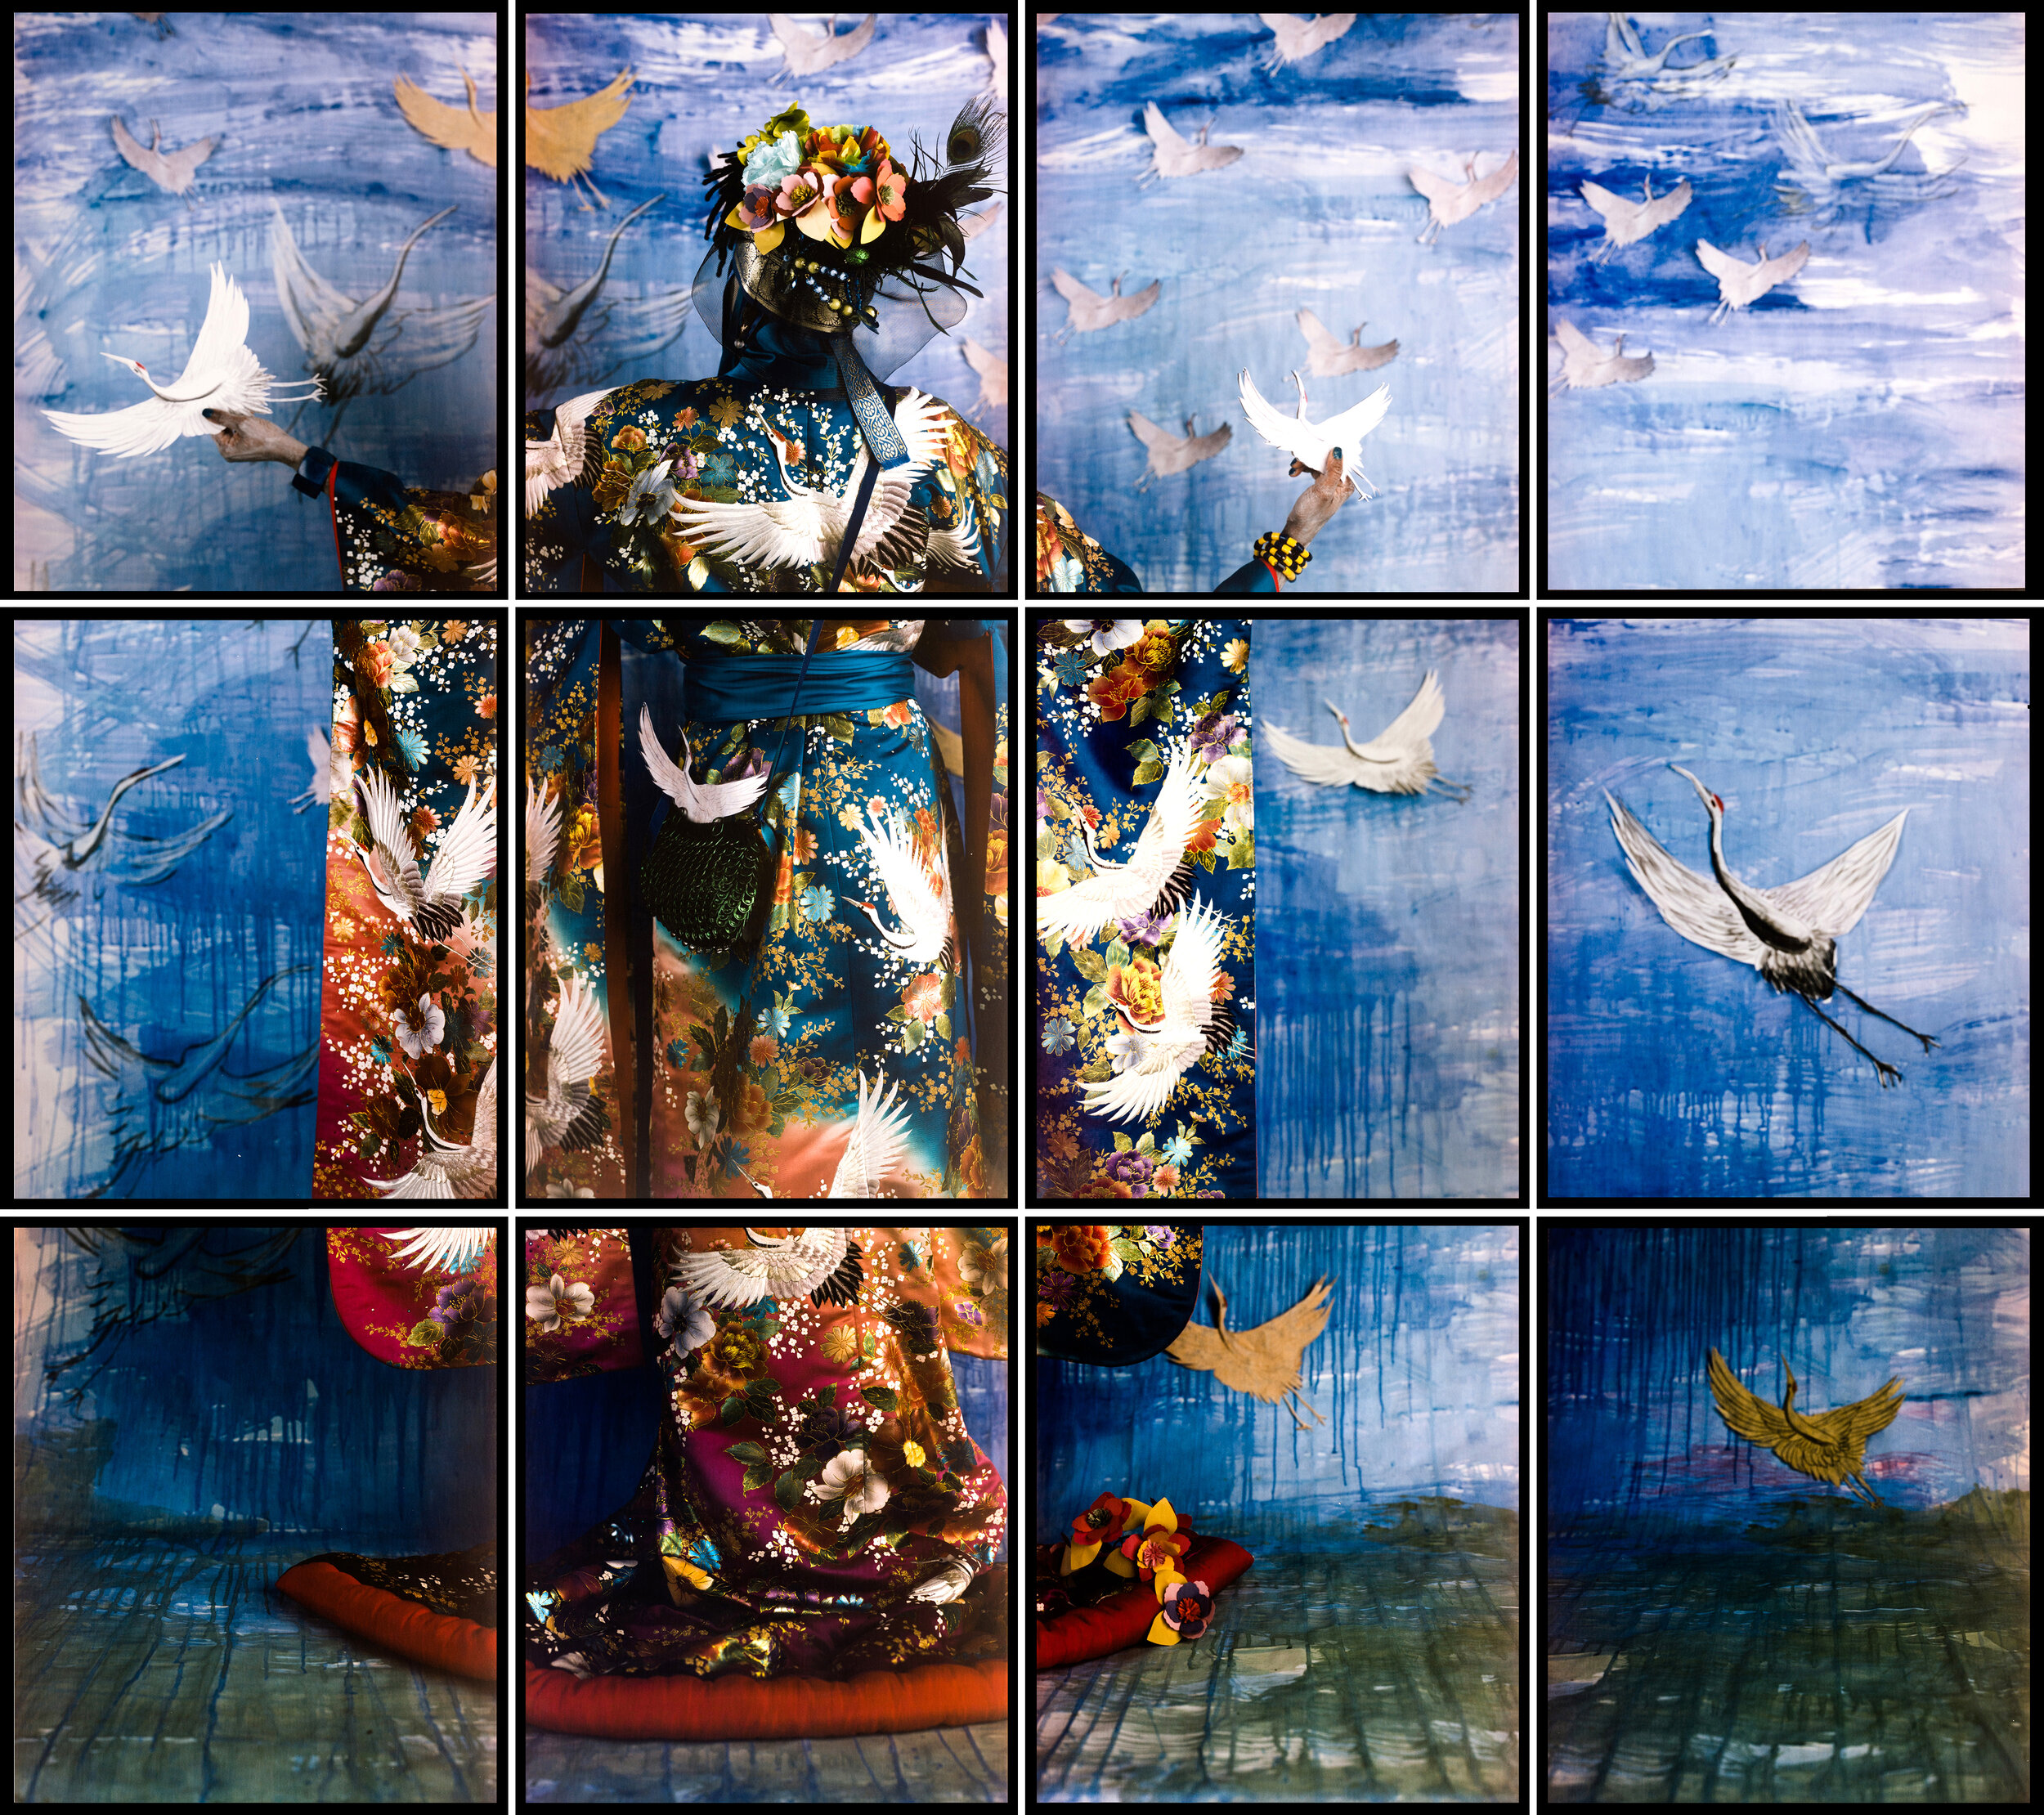  María Magdalena Campos-Pons,  El Mensajero,  2011, composition of 12 Polaroid Polacolor Pro 24 x 20 photograph, 24 x 20 inches each (60.7 x 50.8 cm each), 72 x 80 inches (182.9 x 203.2 cm) 